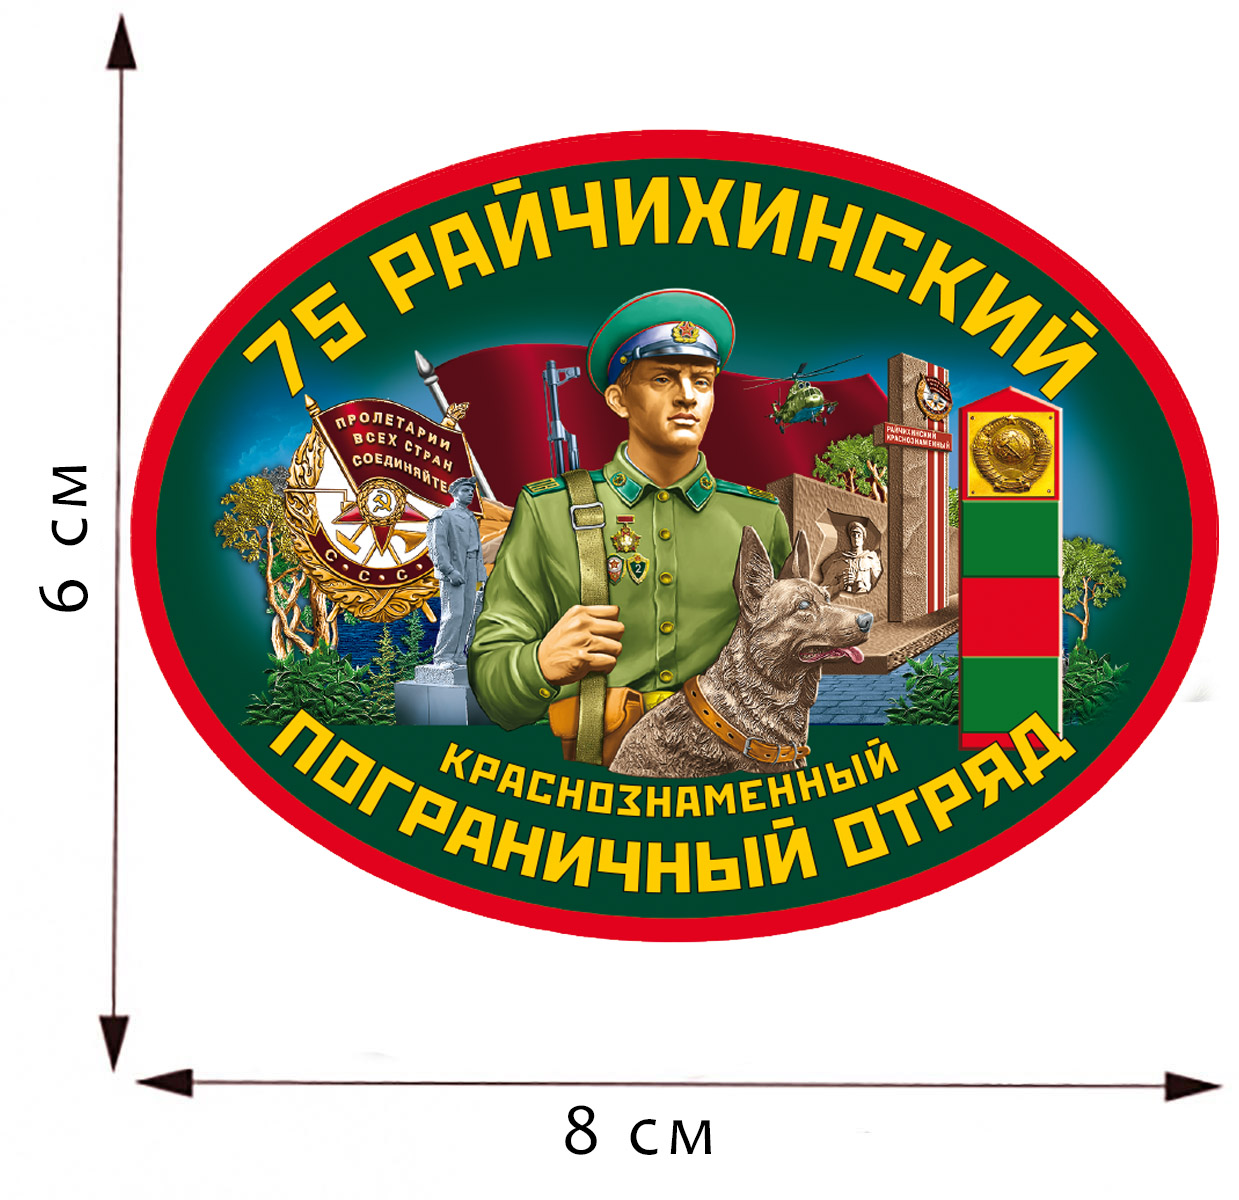 Термотрансфер "75 Райчихинский ПОГО" для одежды